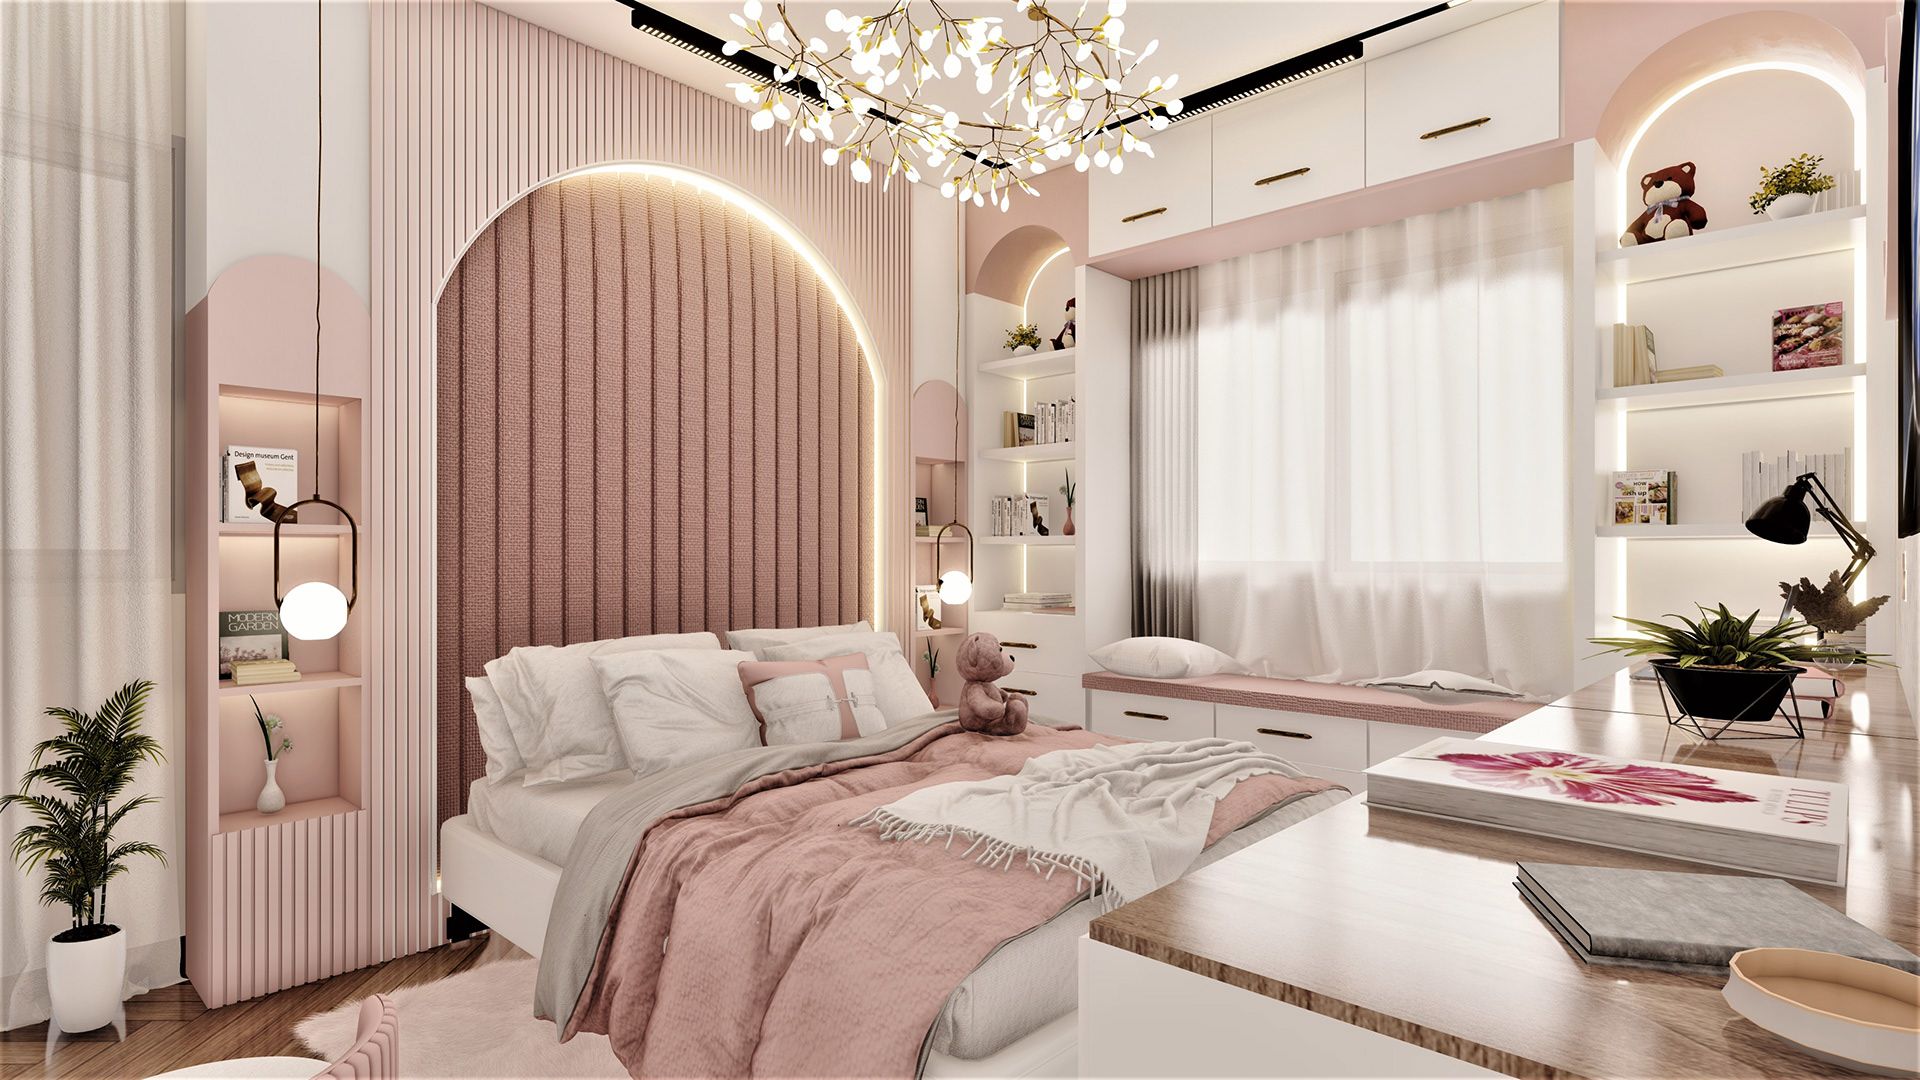 Phòng ngủ màu hồng nhạt kết hợp với hiệu ứng đèn trần âm tường và đèn trần thả rất bắt mắt